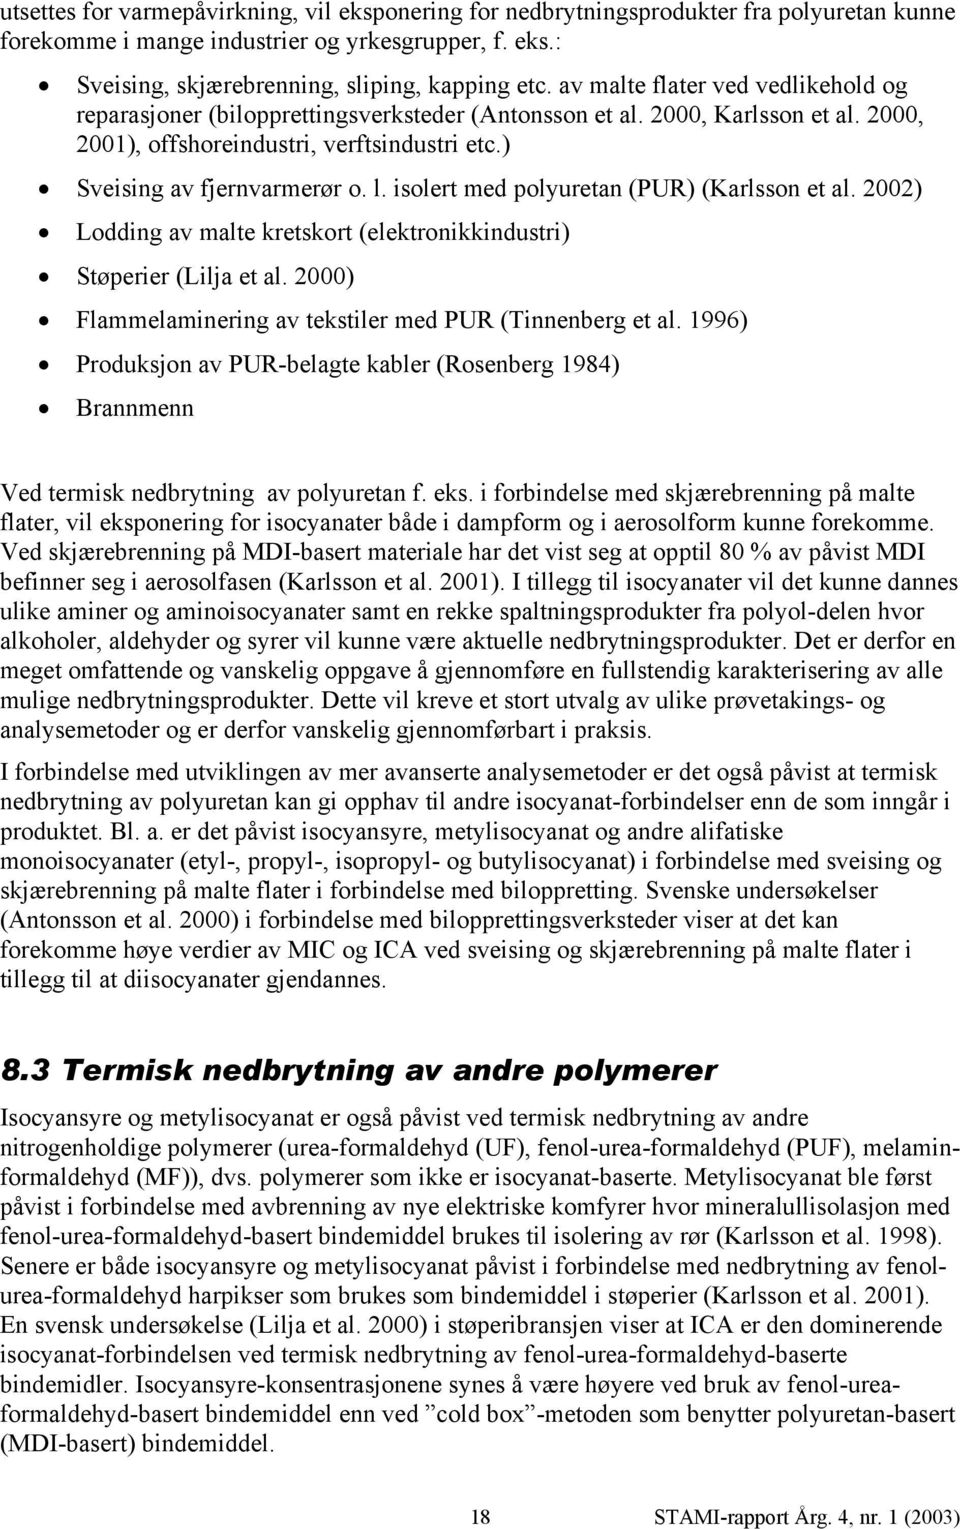 isolert med polyuretan (PUR) (Karlsson et al. 2002) Lodding av malte kretskort (elektronikkindustri) Støperier (Lilja et al. 2000) Flammelaminering av tekstiler med PUR (Tinnenberg et al.